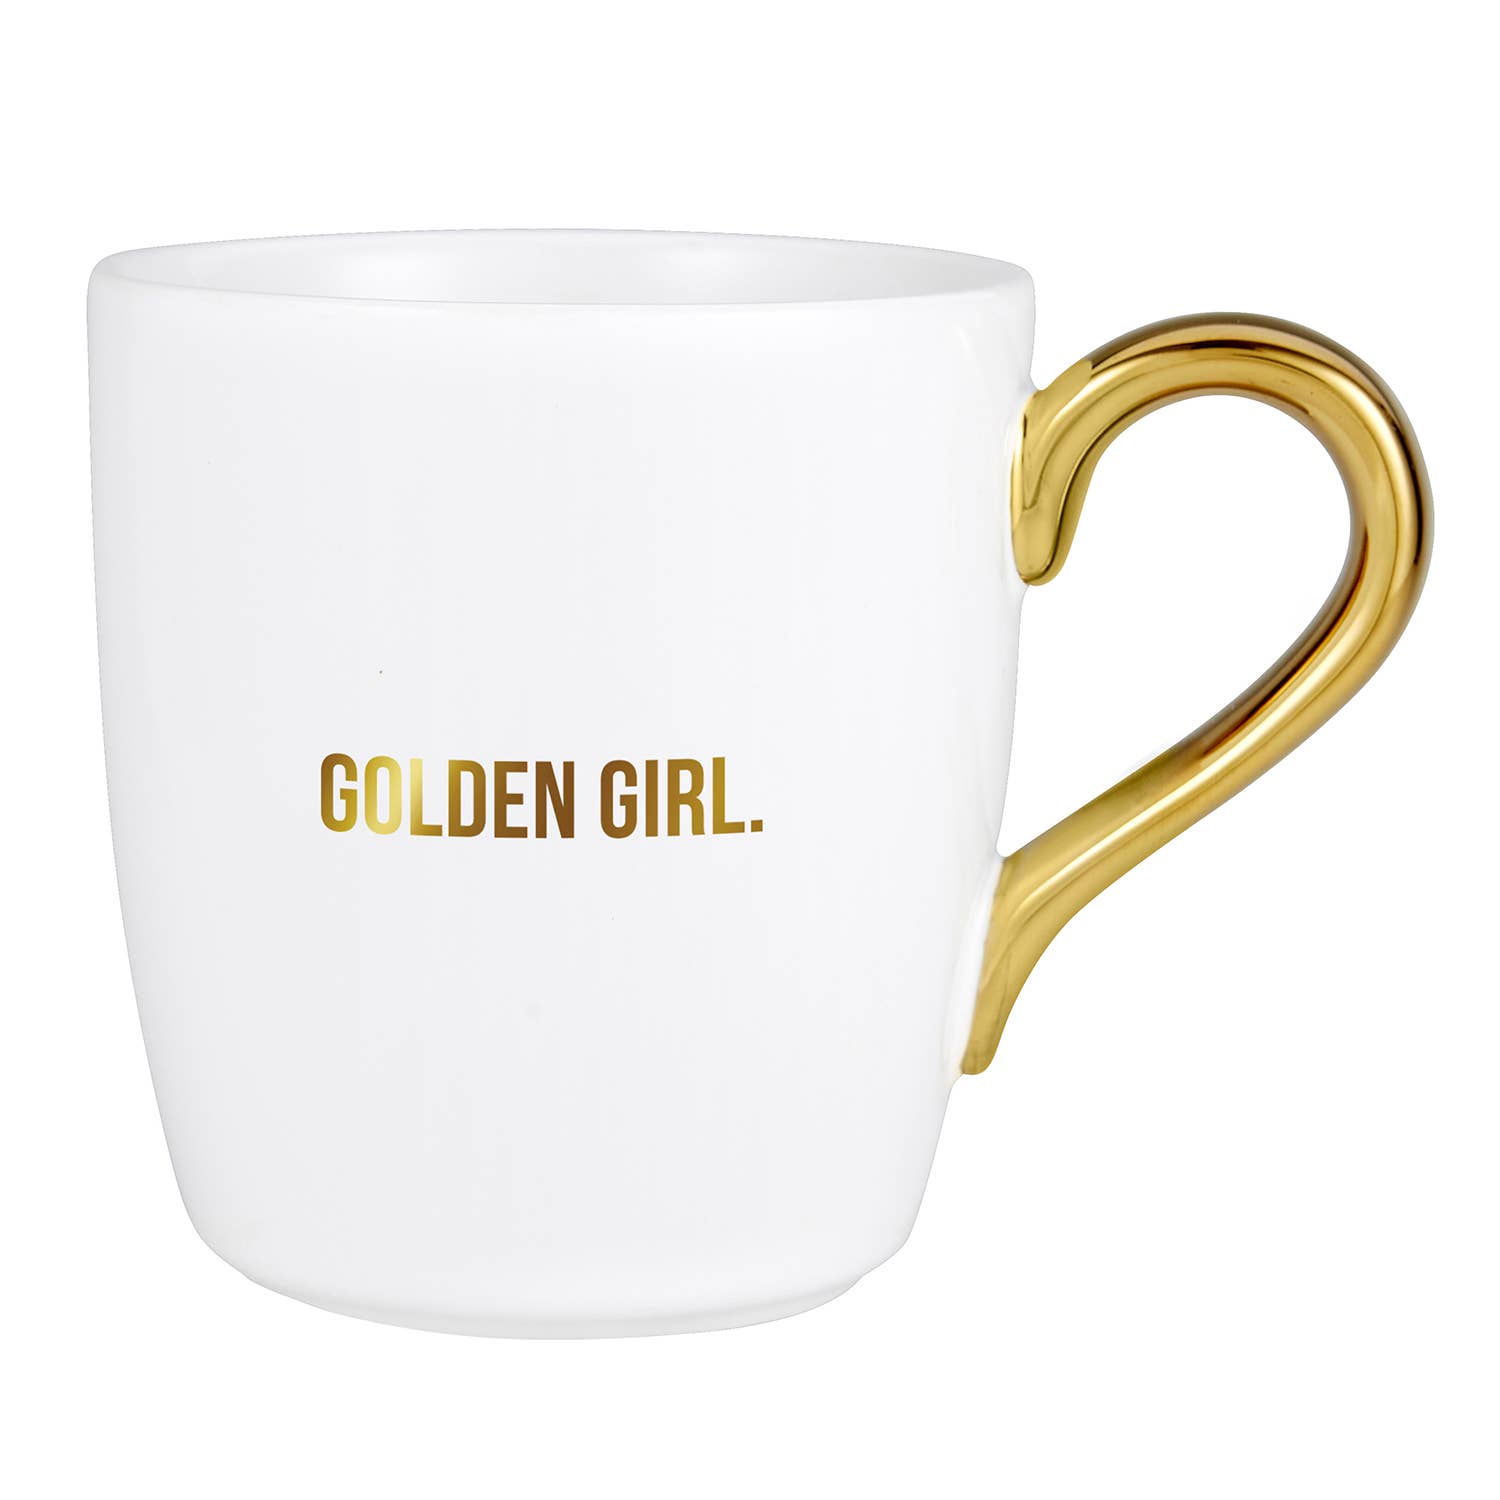 That's All Gold Mug - Golden Girl